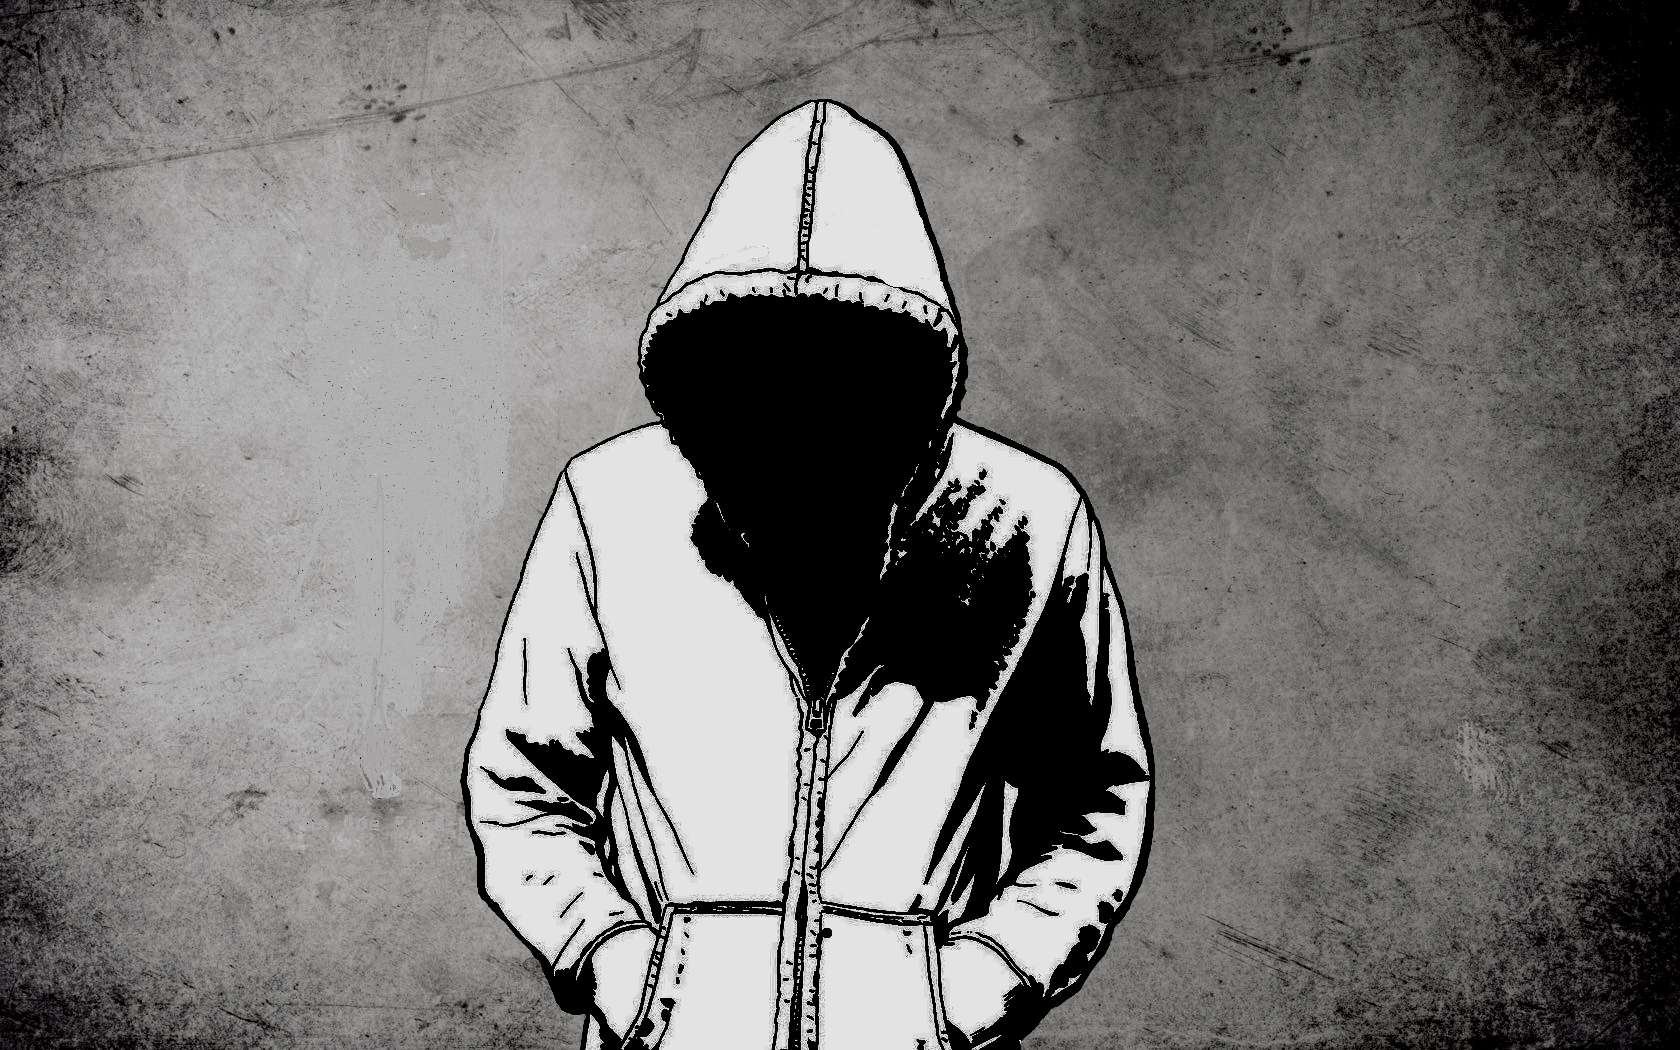 Dark Hooded Figure Wallpapers - Top Free Dark Hooded Figure Backgrounds